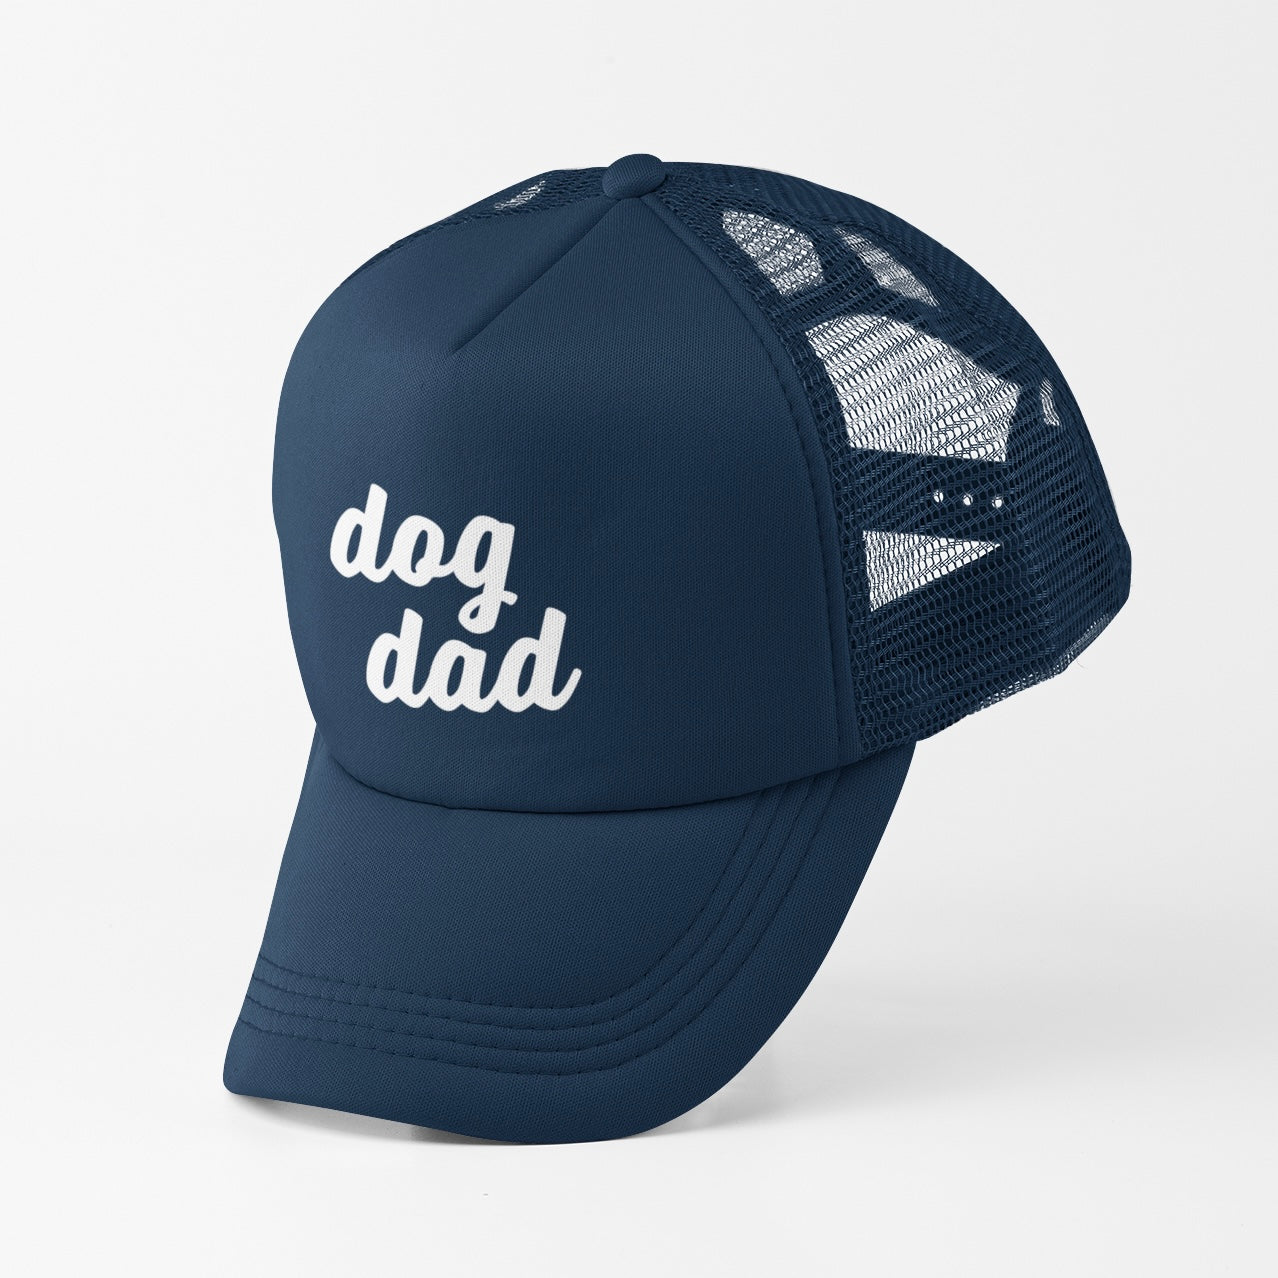 Big-Rig Trucker Hat - Dog Dad